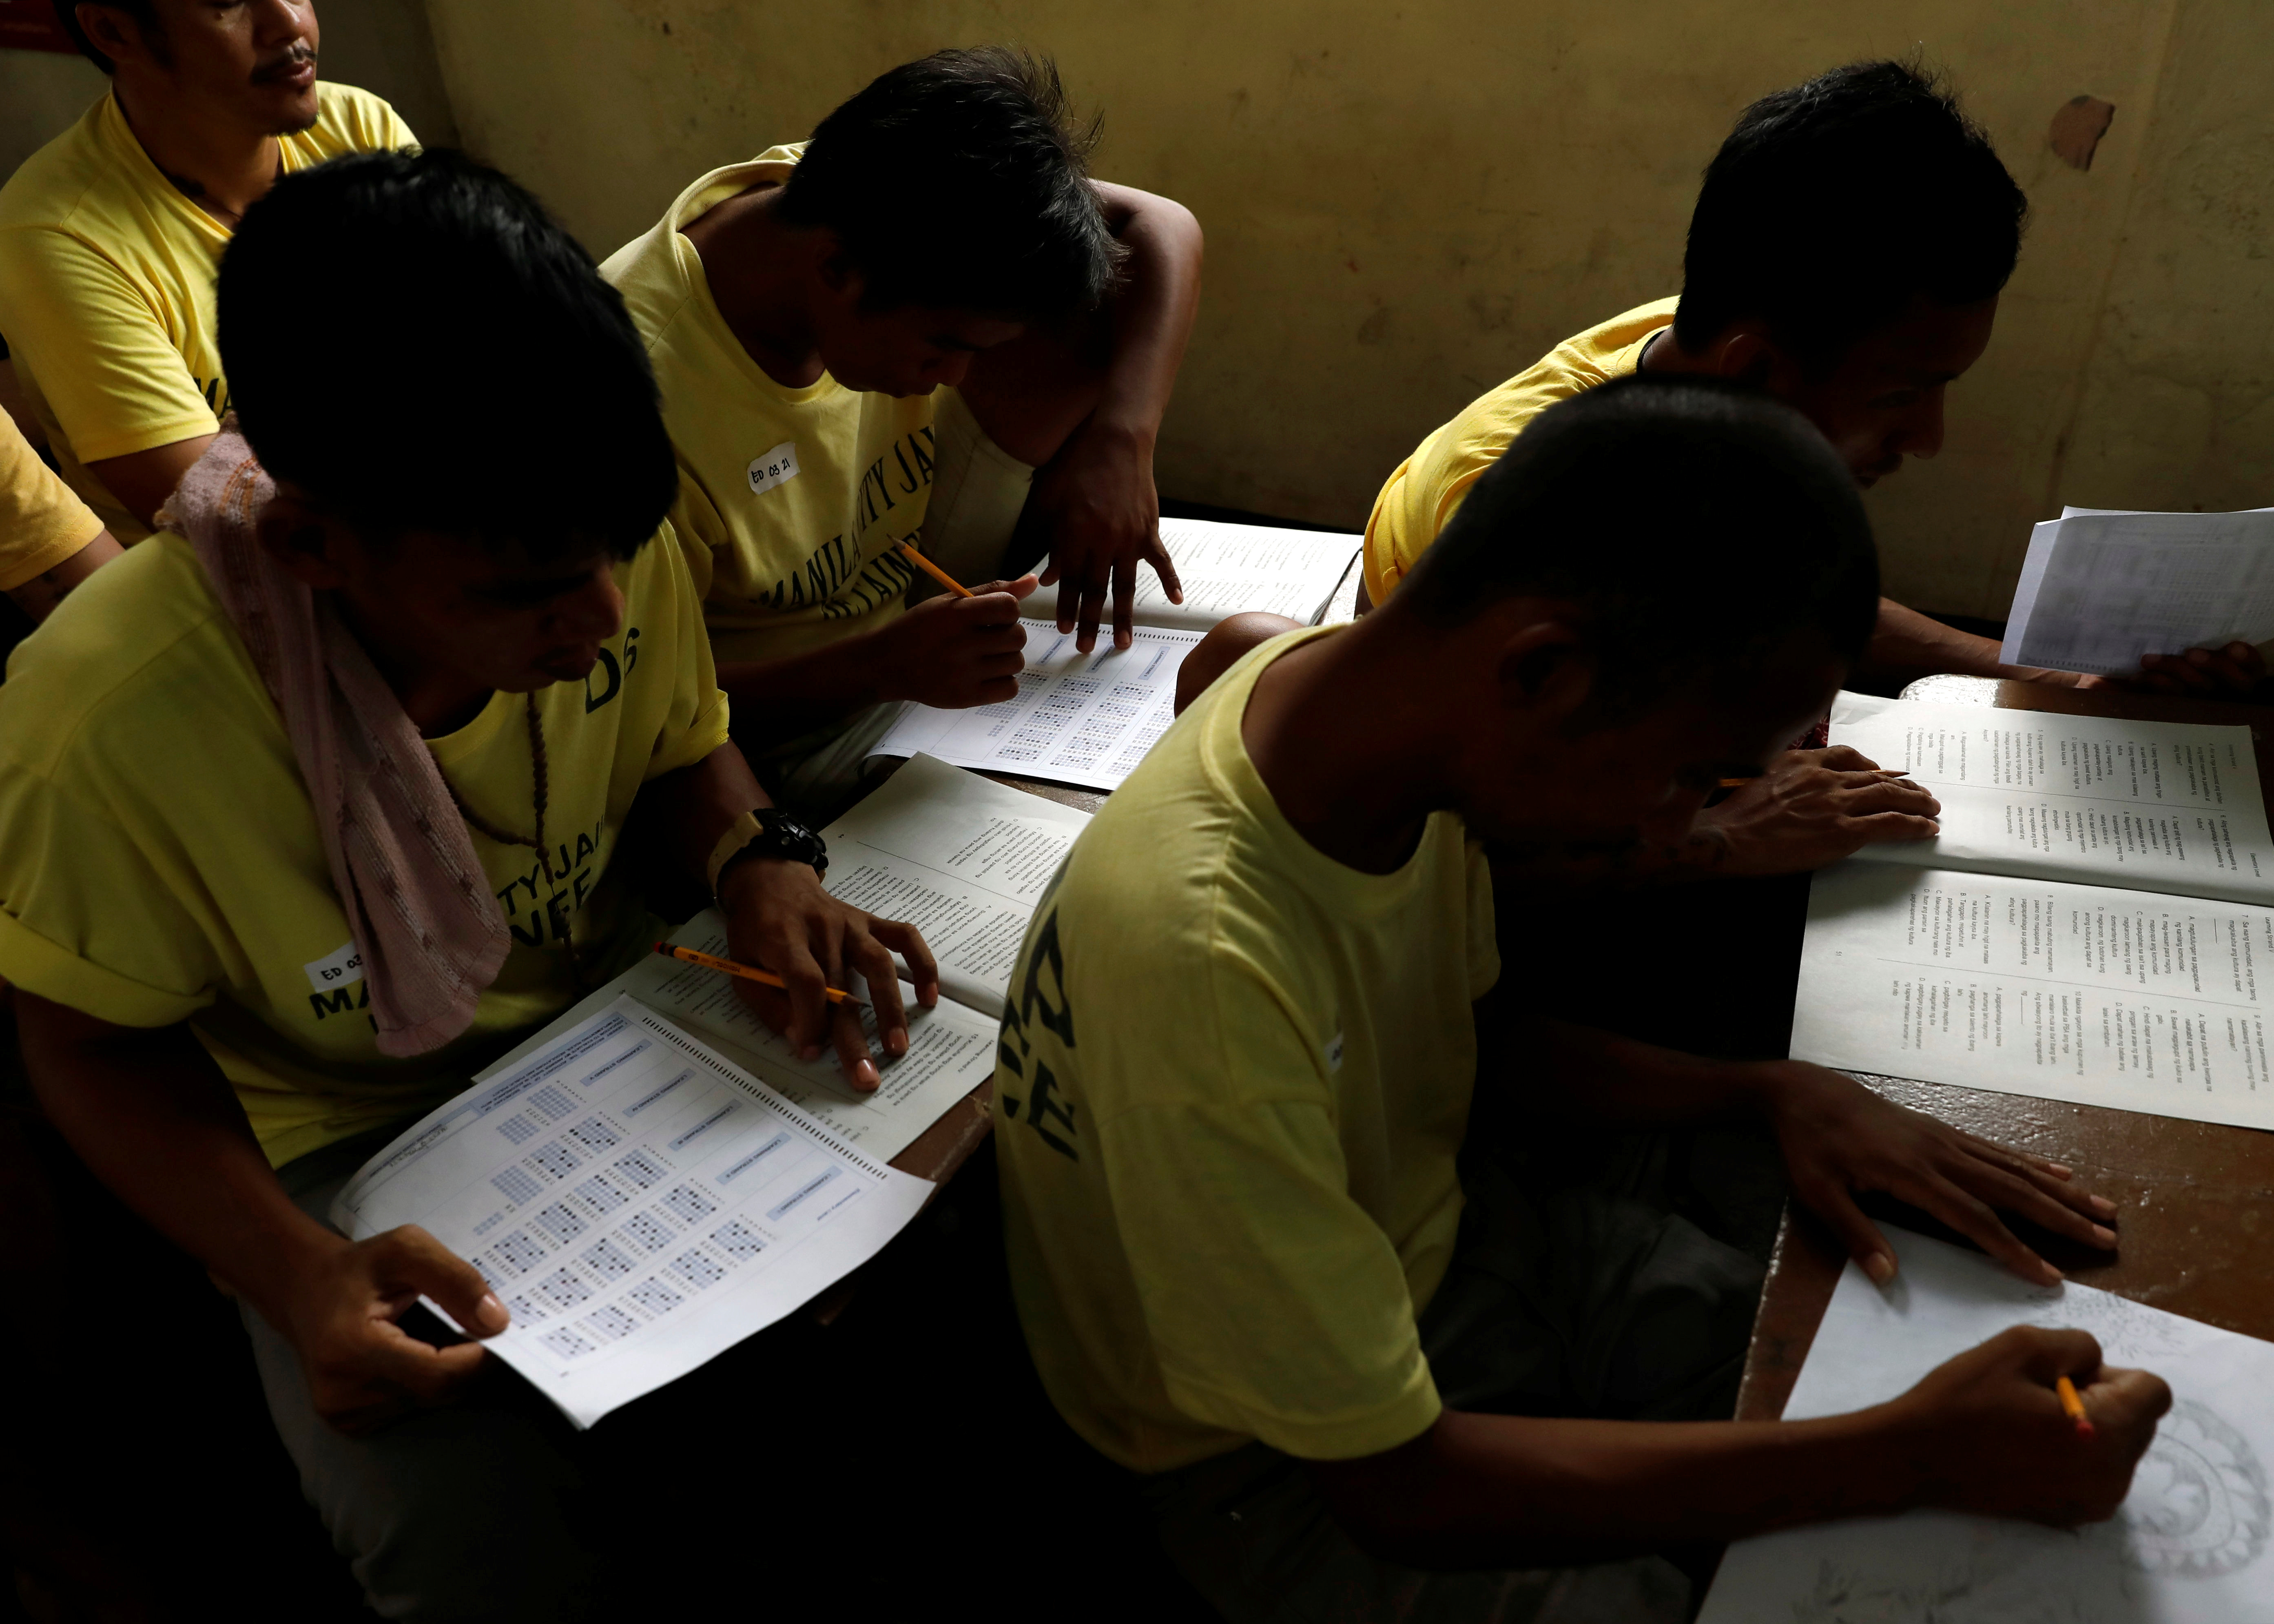 سجناء الفلبين يؤدون امتحانات التعليم البديل